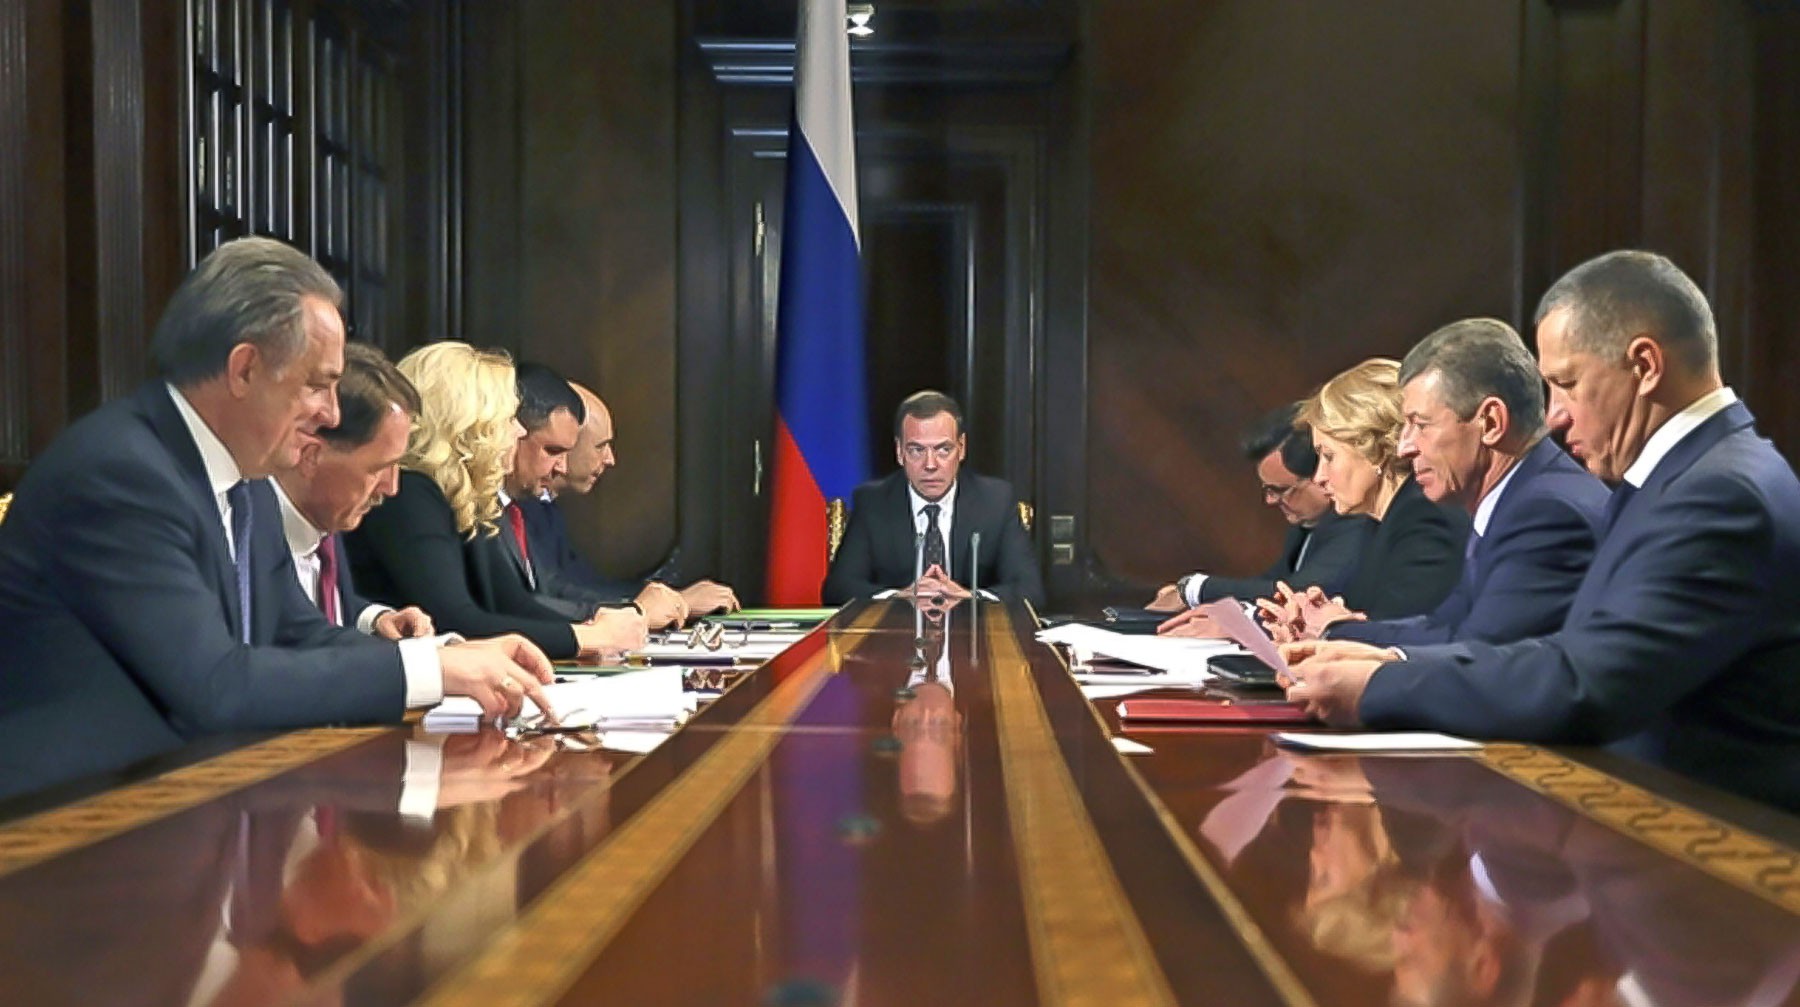 Dailystorm - Медведев утвердил обязательный «звездный» статус российских отелей и гостиниц